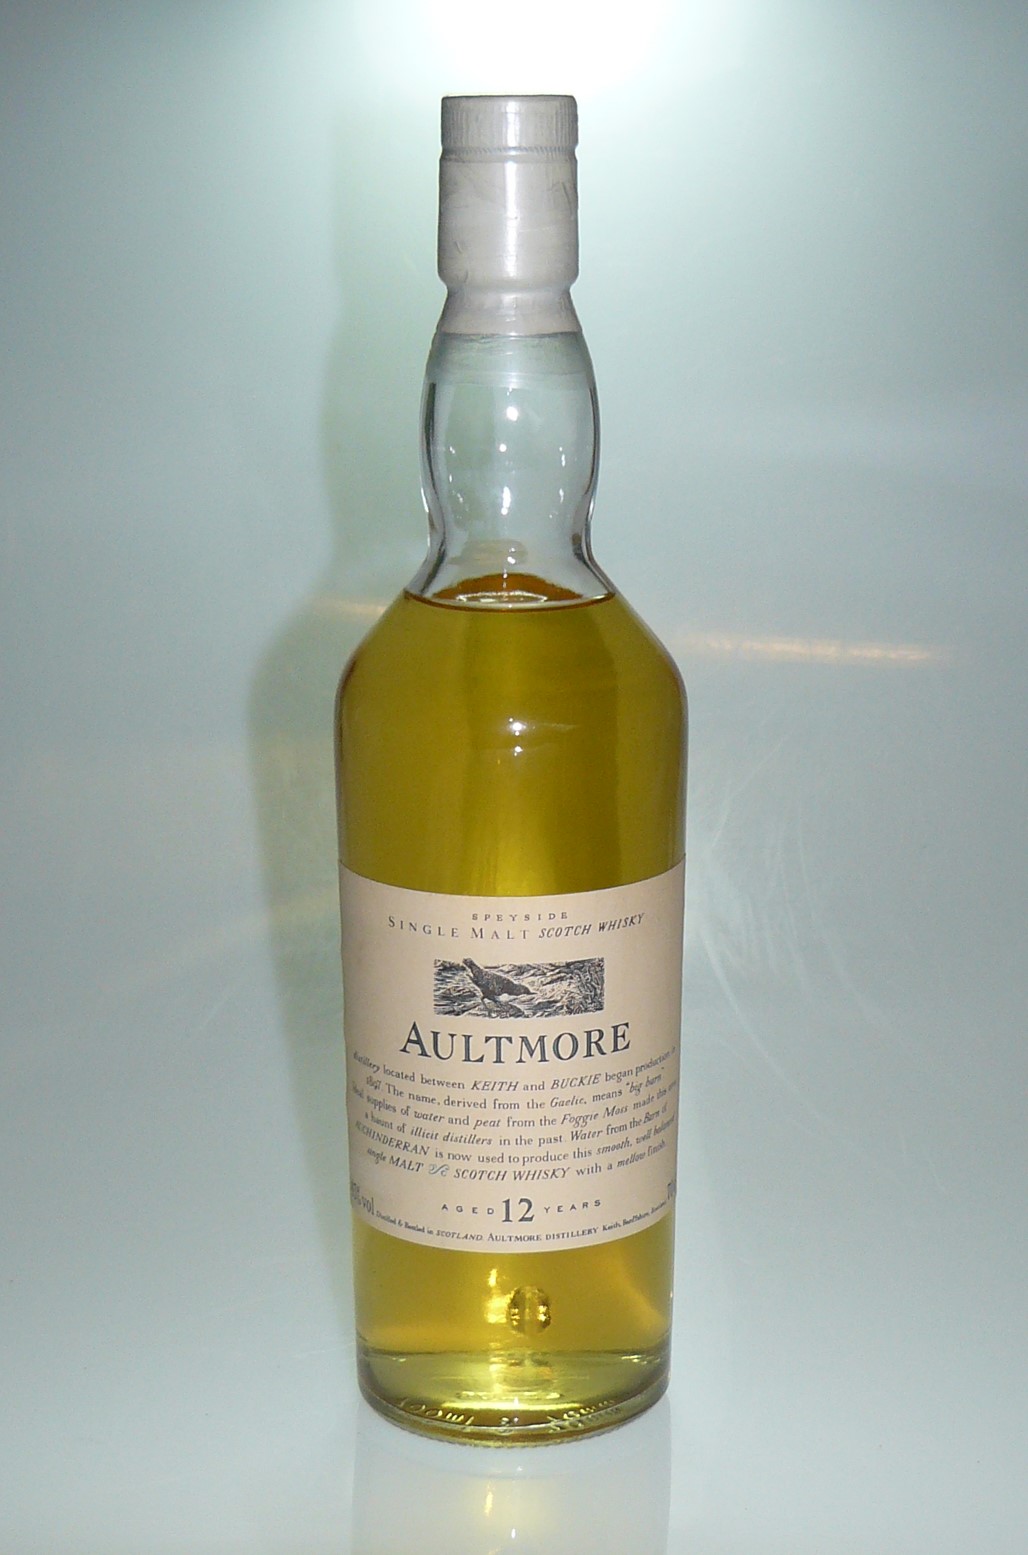 AULTMROE 12年 花と動物 白キャップ 1991年発売最初期ボトル 1978年蒸留